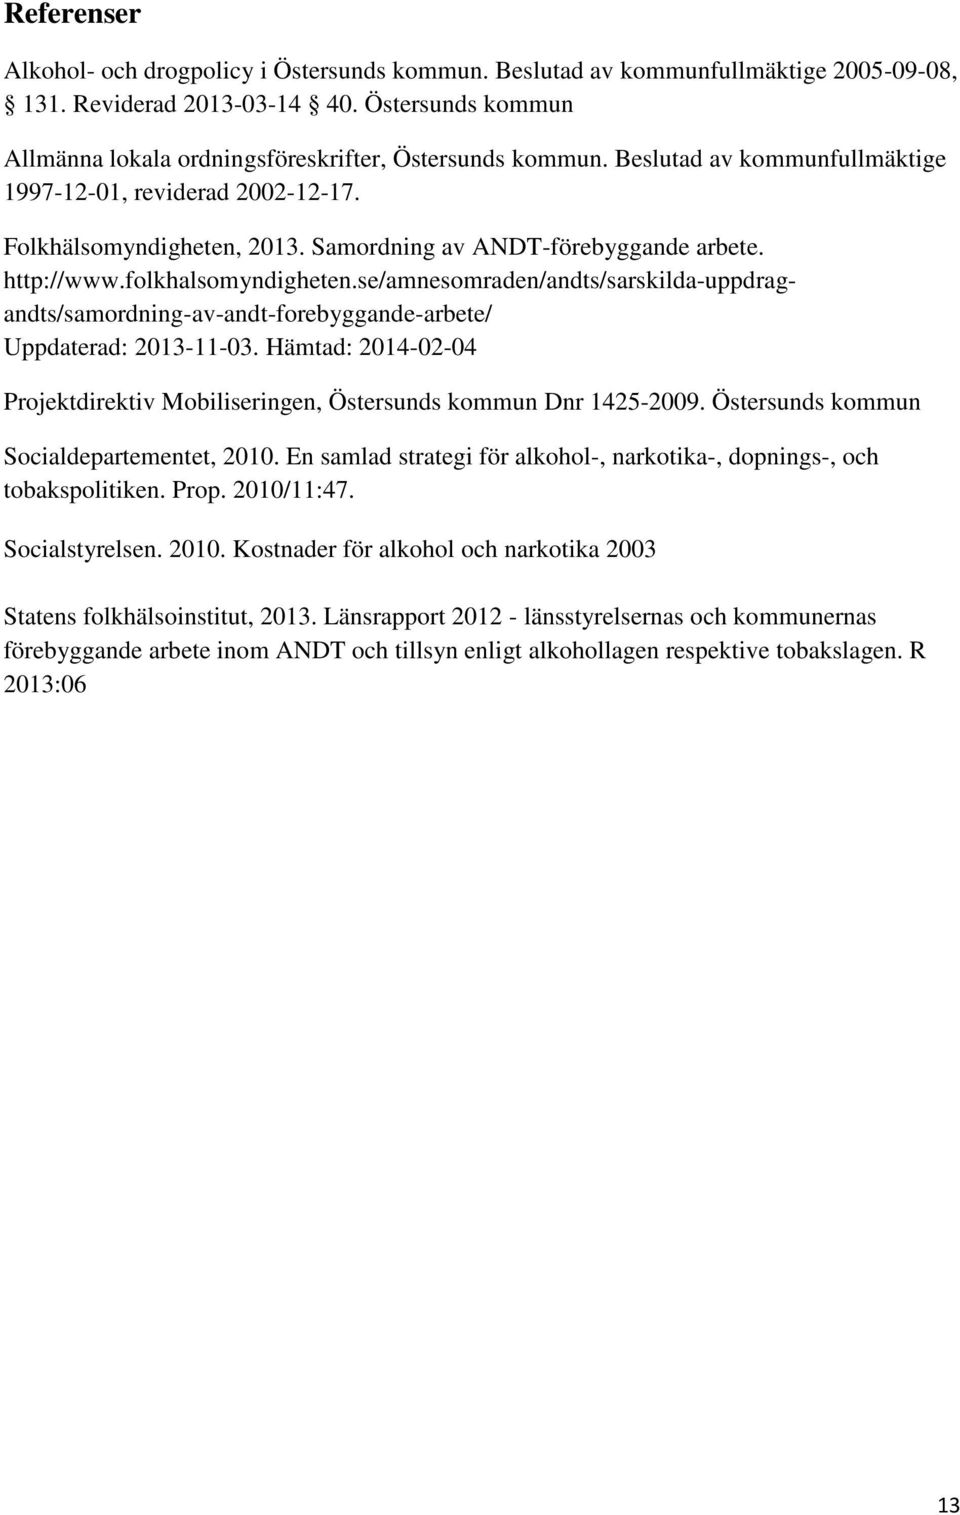 Samordning av ANDT-förebyggande arbete. http://www.folkhalsomyndigheten.se/amnesomraden/andts/sarskilda-uppdragandts/samordning-av-andt-forebyggande-arbete/ Uppdaterad: 2013-11-03.